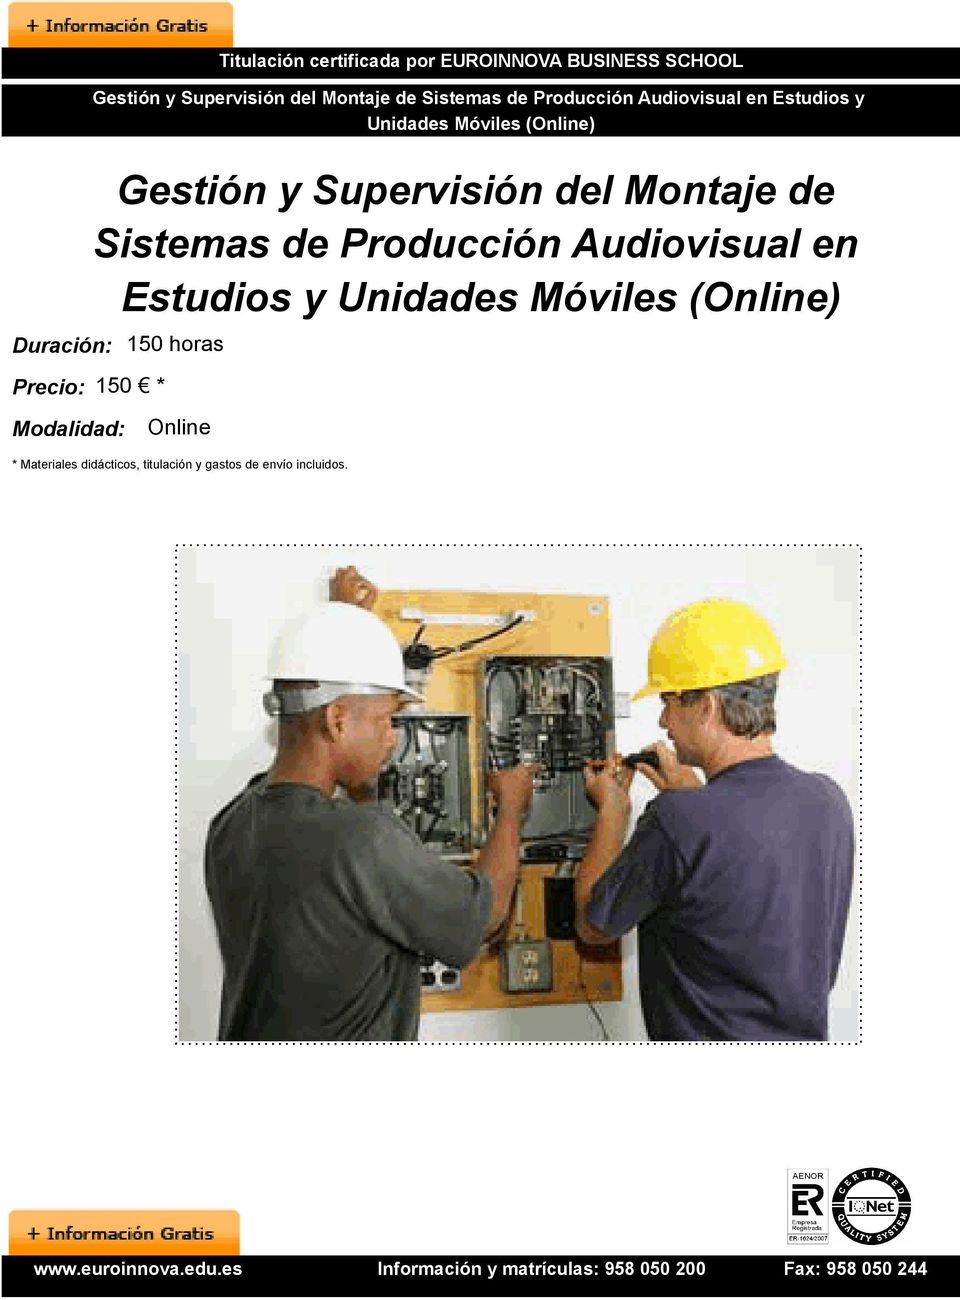 Precio: 150 * Gestión y Supervisión del Montaje de Sistemas de Producción Audiovisual